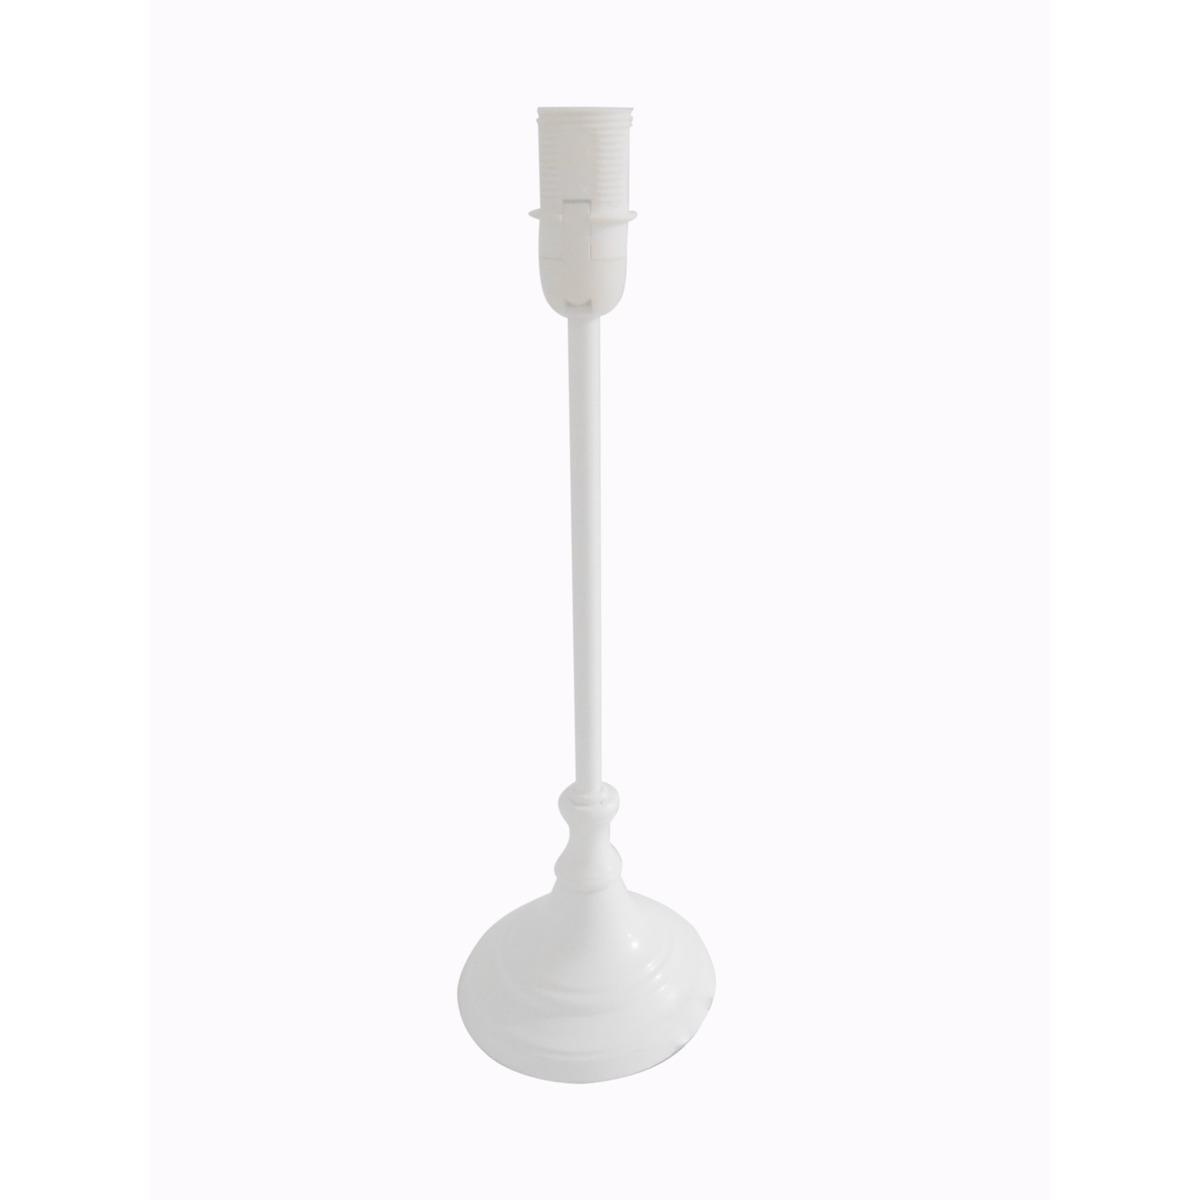 Pied de lampe à poser ou à suspendre - Hauteur 32,5 cm - Blanc